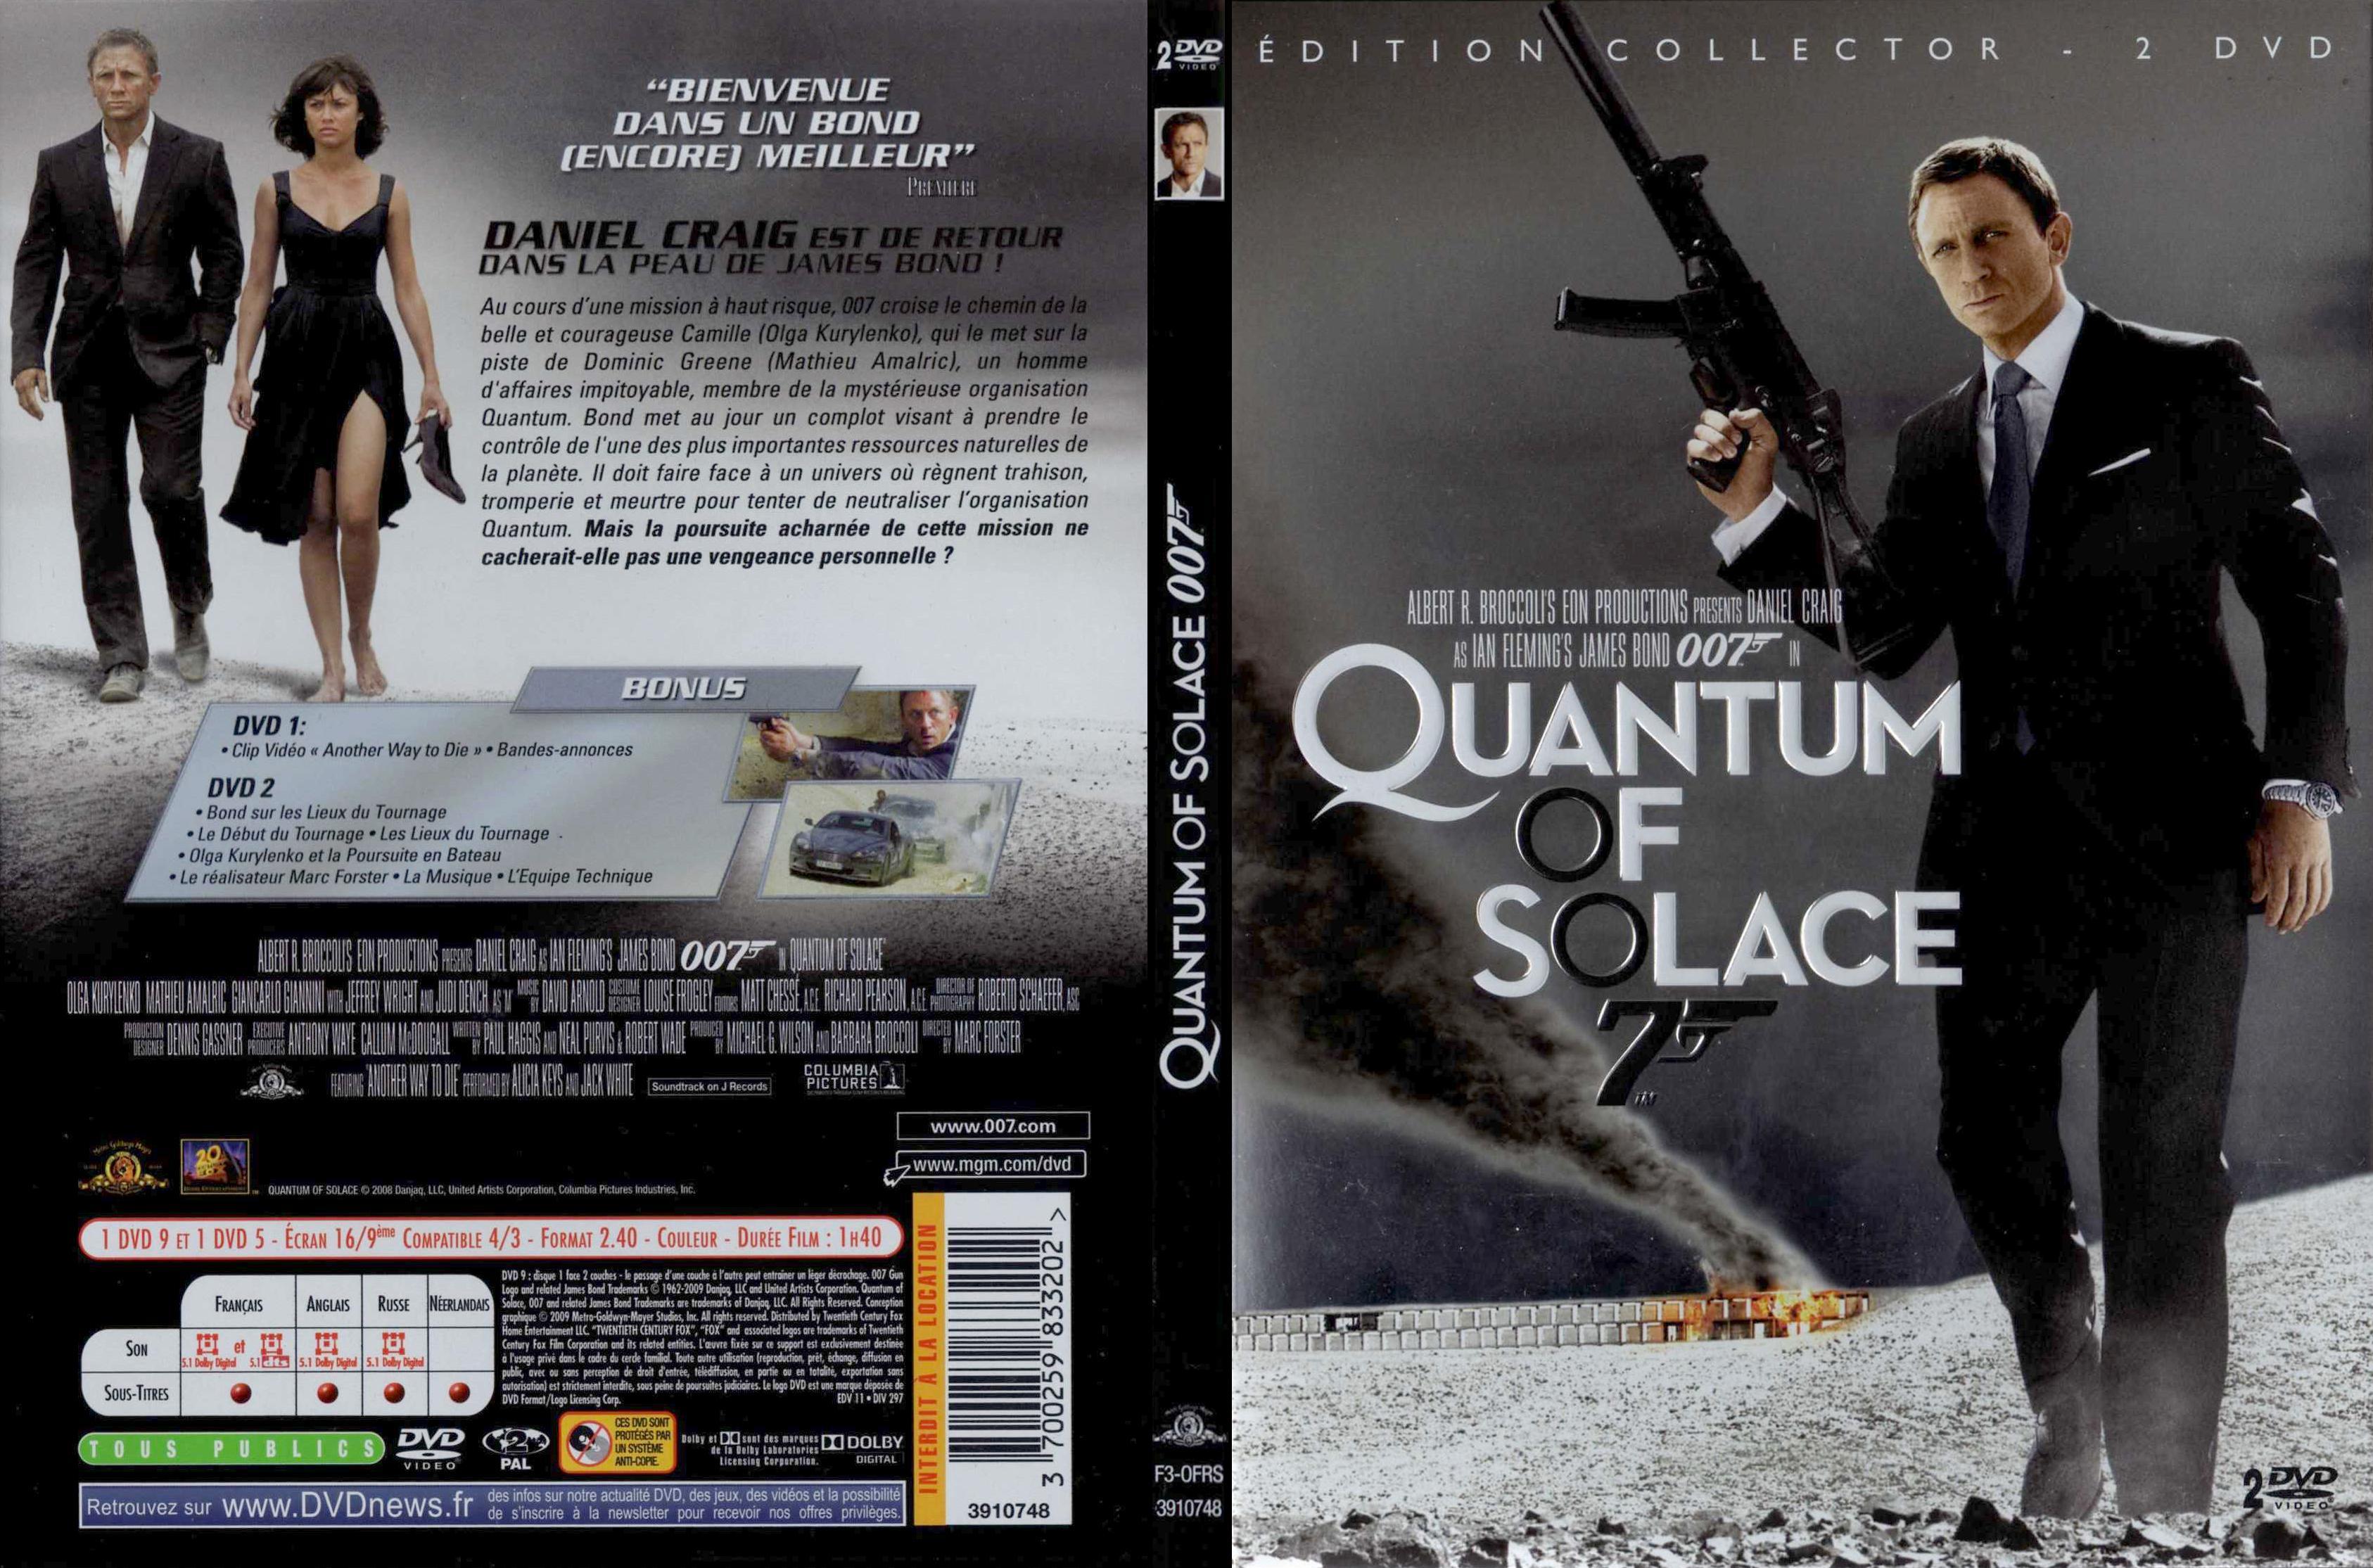 Jaquette DVD James Bond 007 Quantum of solace v2